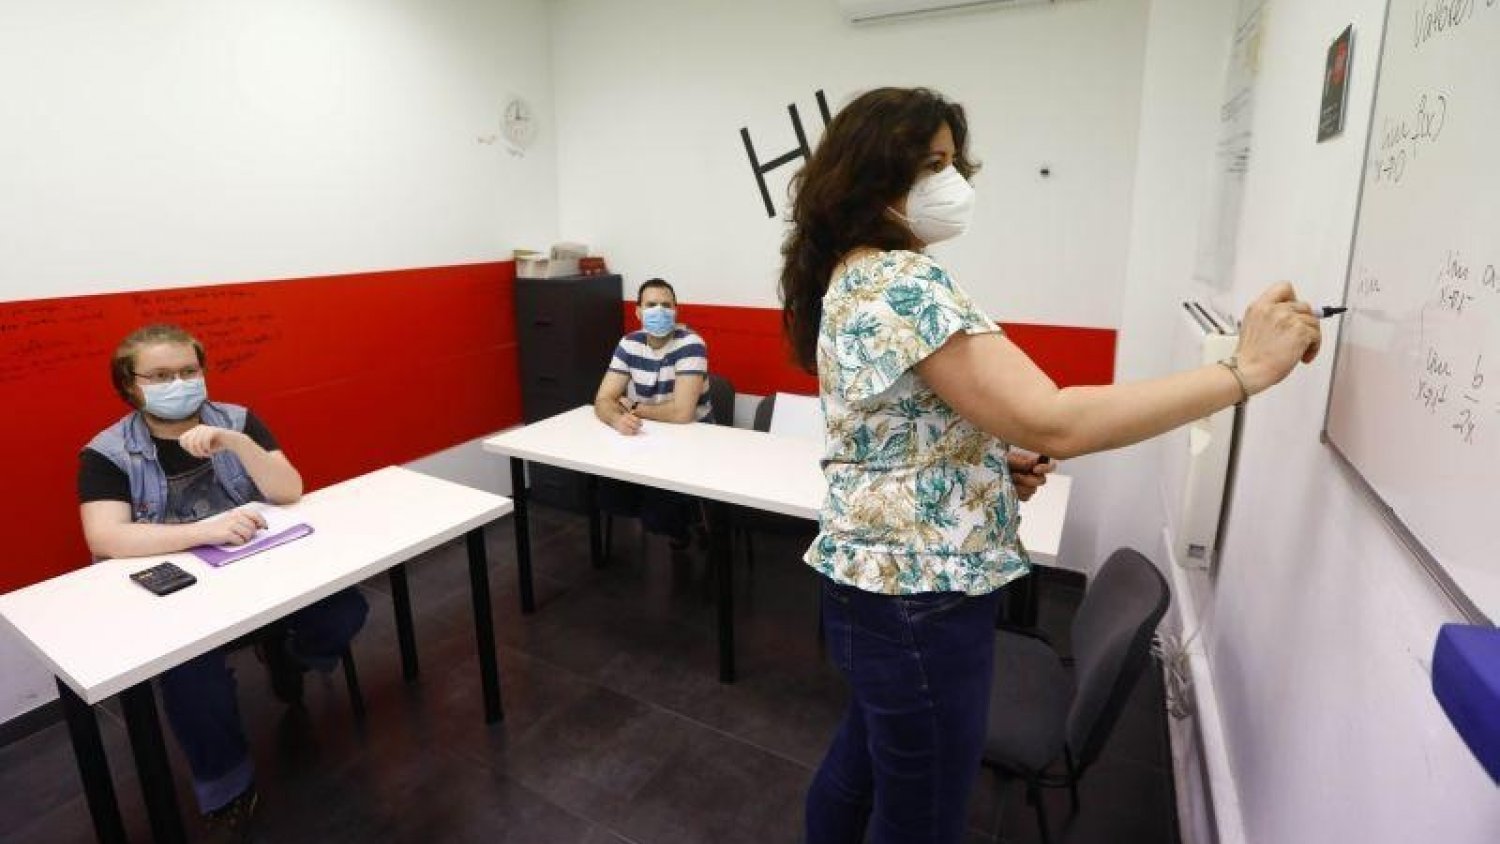 PSOE de Pizarra solicita al ayuntamiento instalar filtros HEPA en centros escolares para prevenir contagios